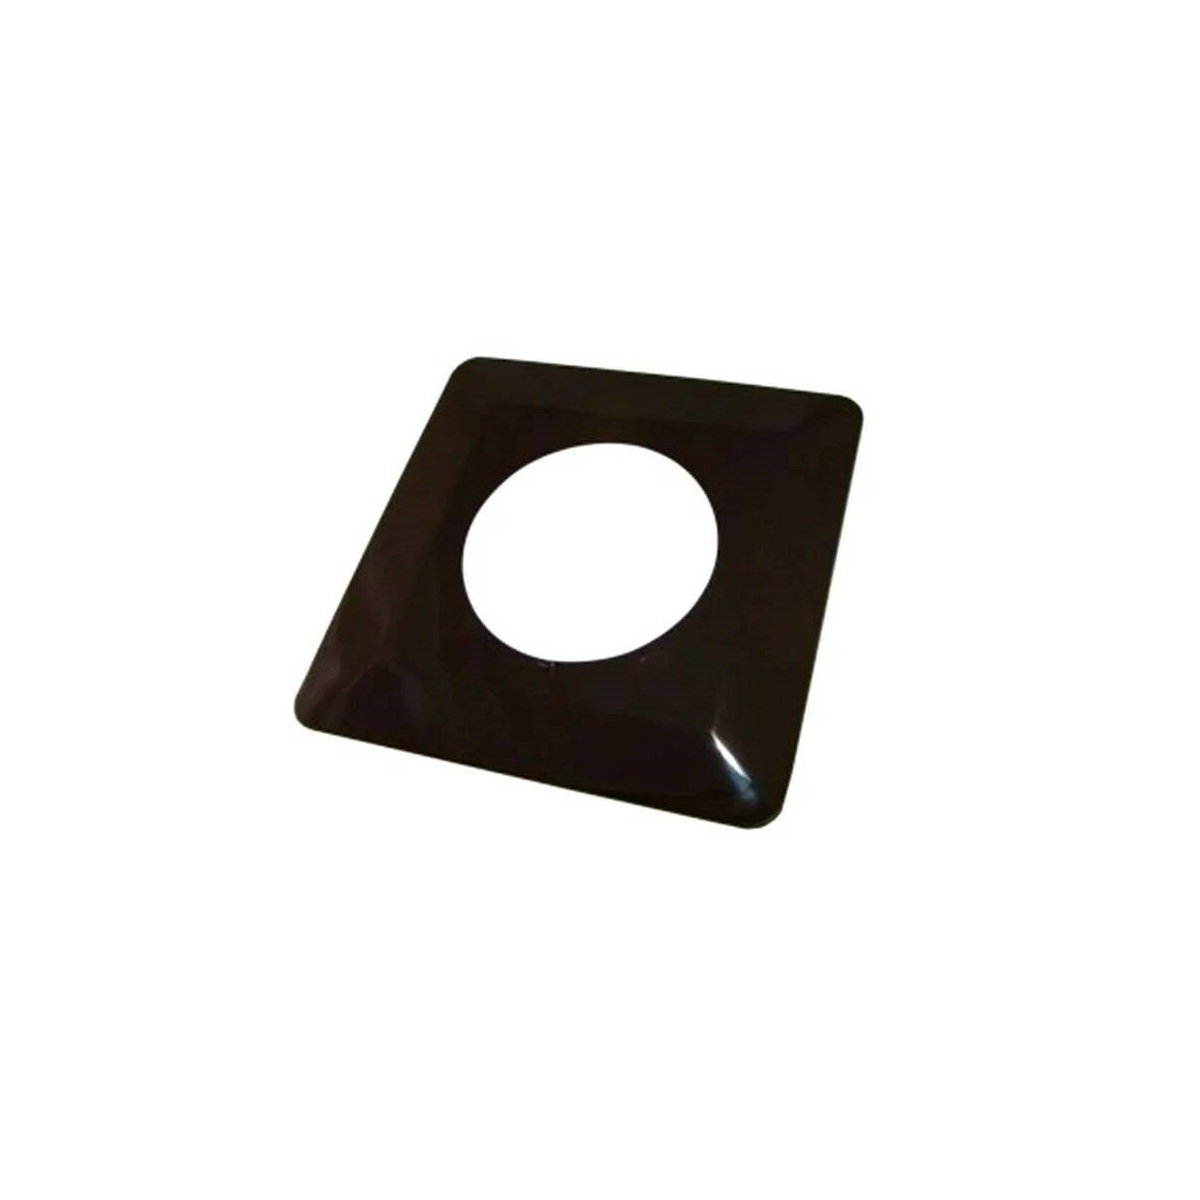 Одноместная защитная рамка для выключателей или розеток для защиты обоев 130х130 мм, шоколад TDM